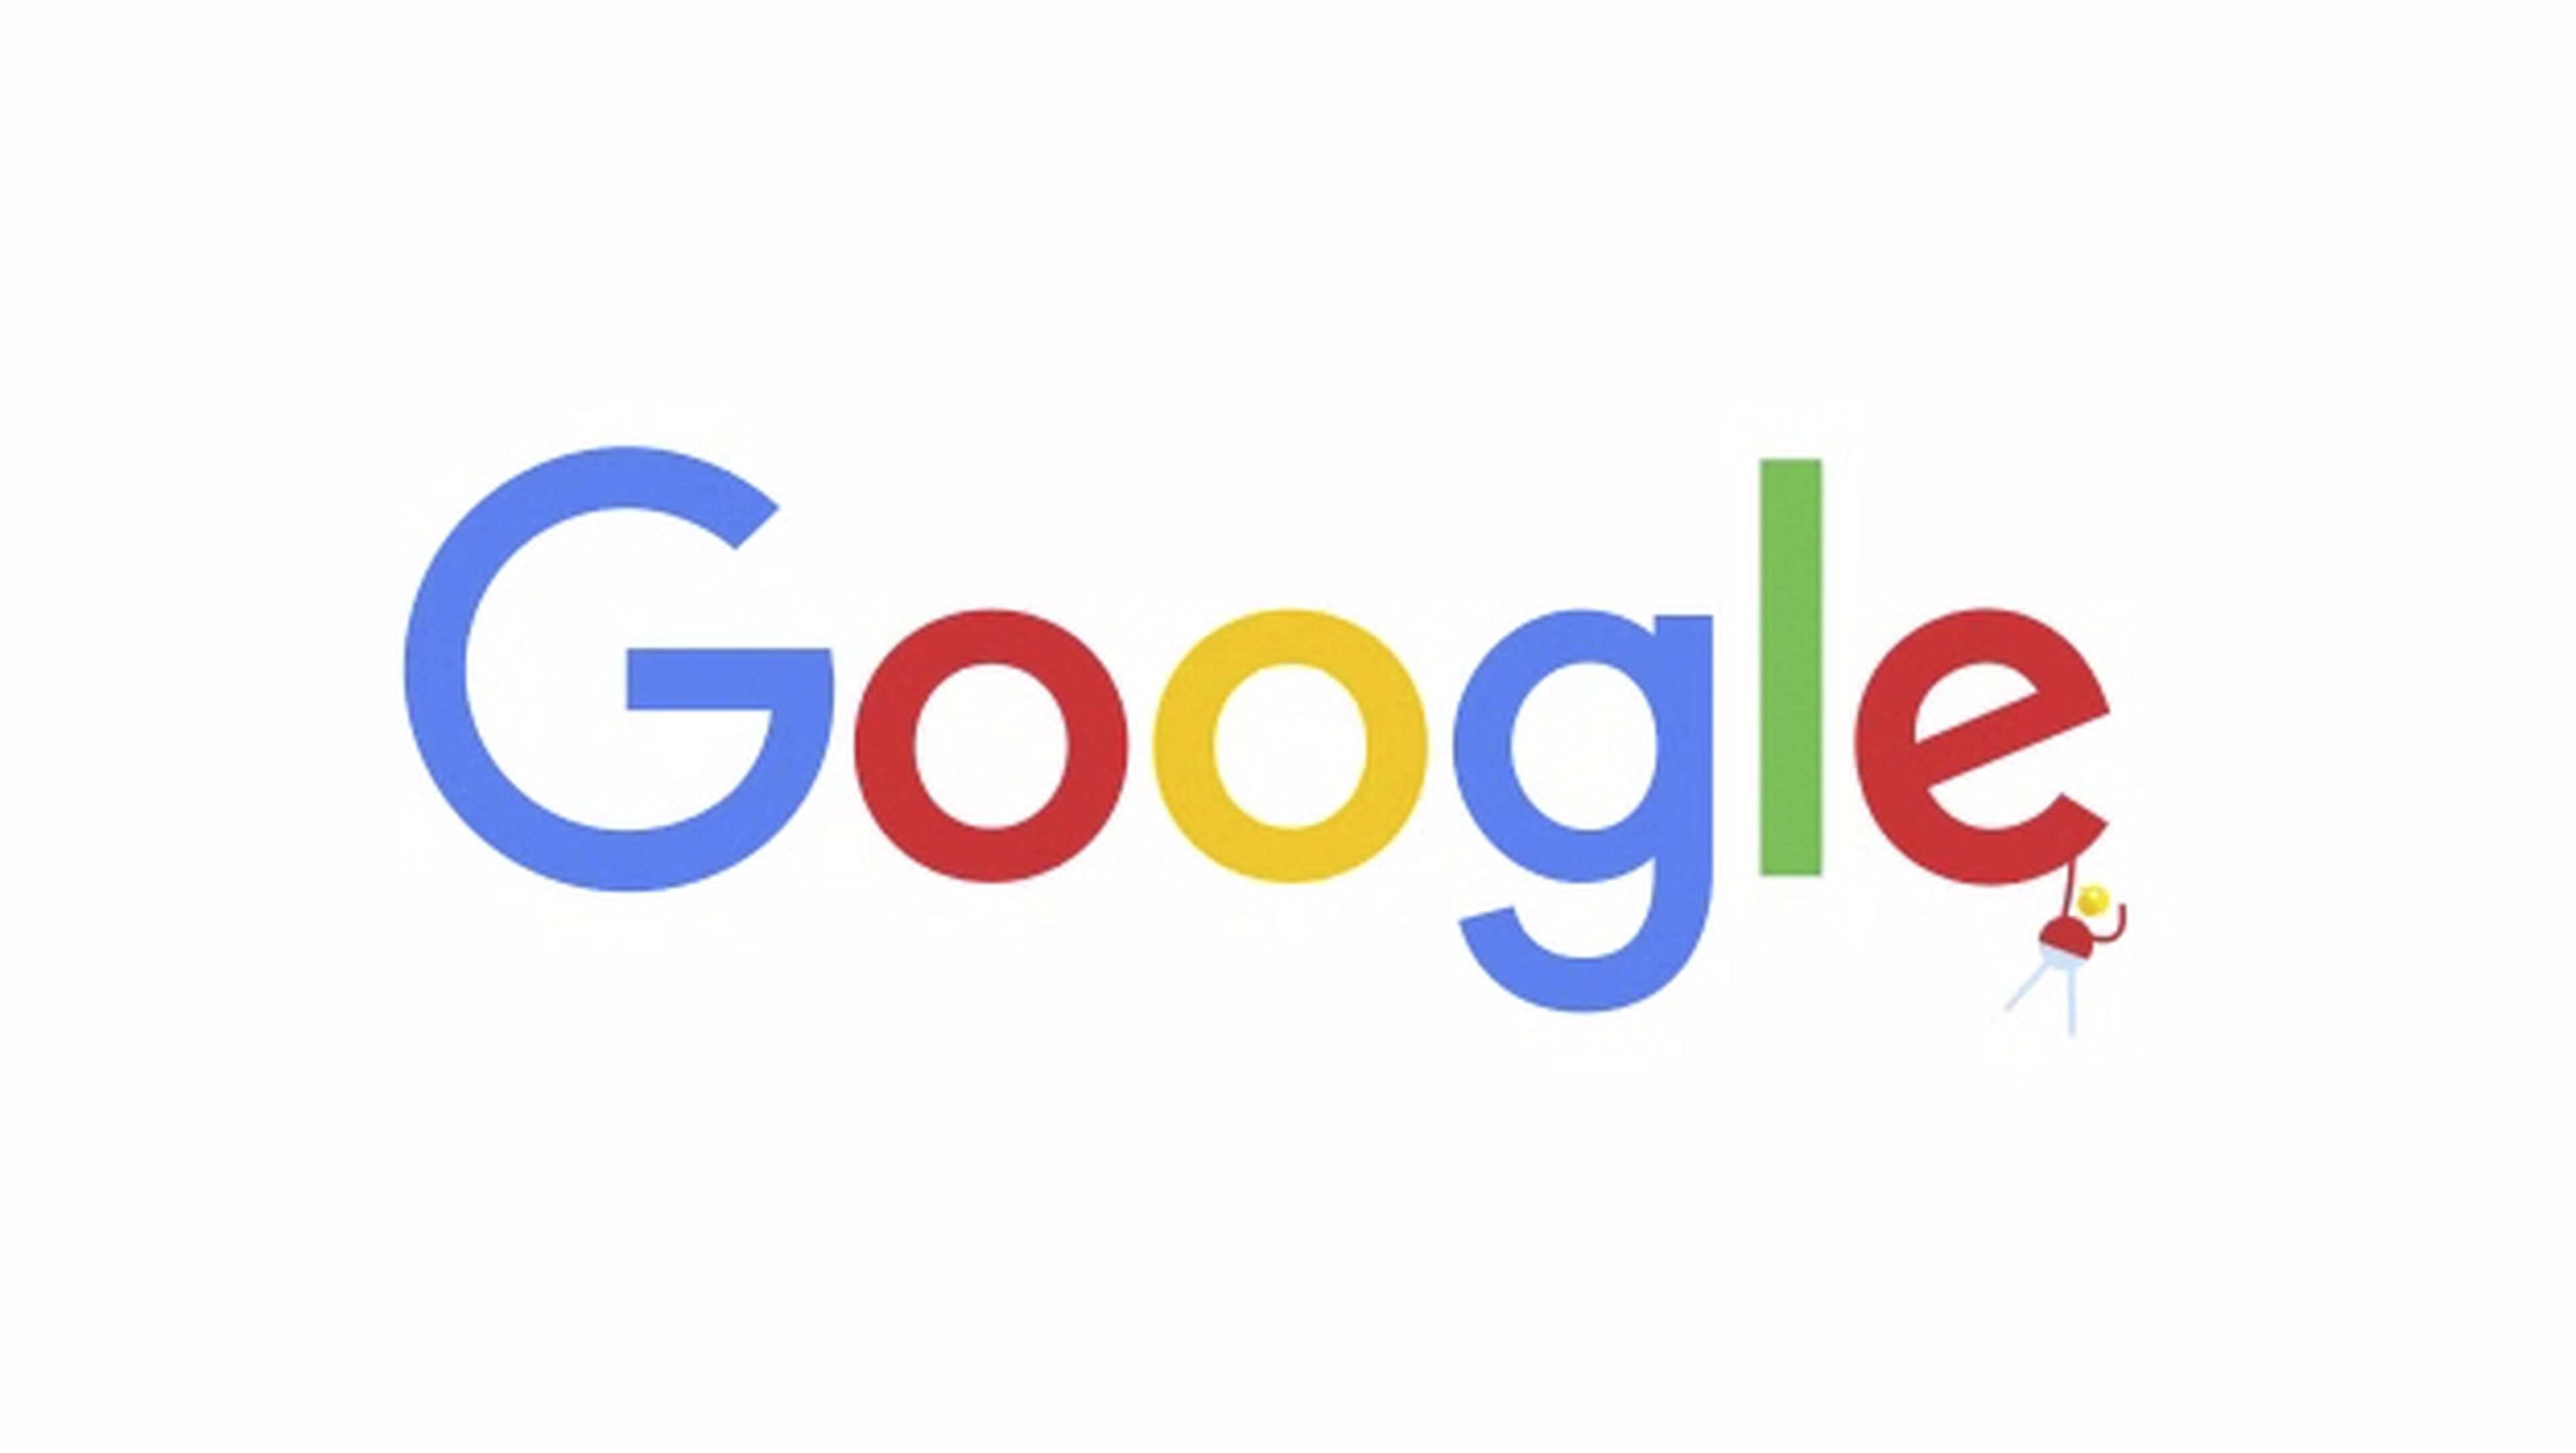 Google actualiza el diseño de su logotipo y su lenguaje visual